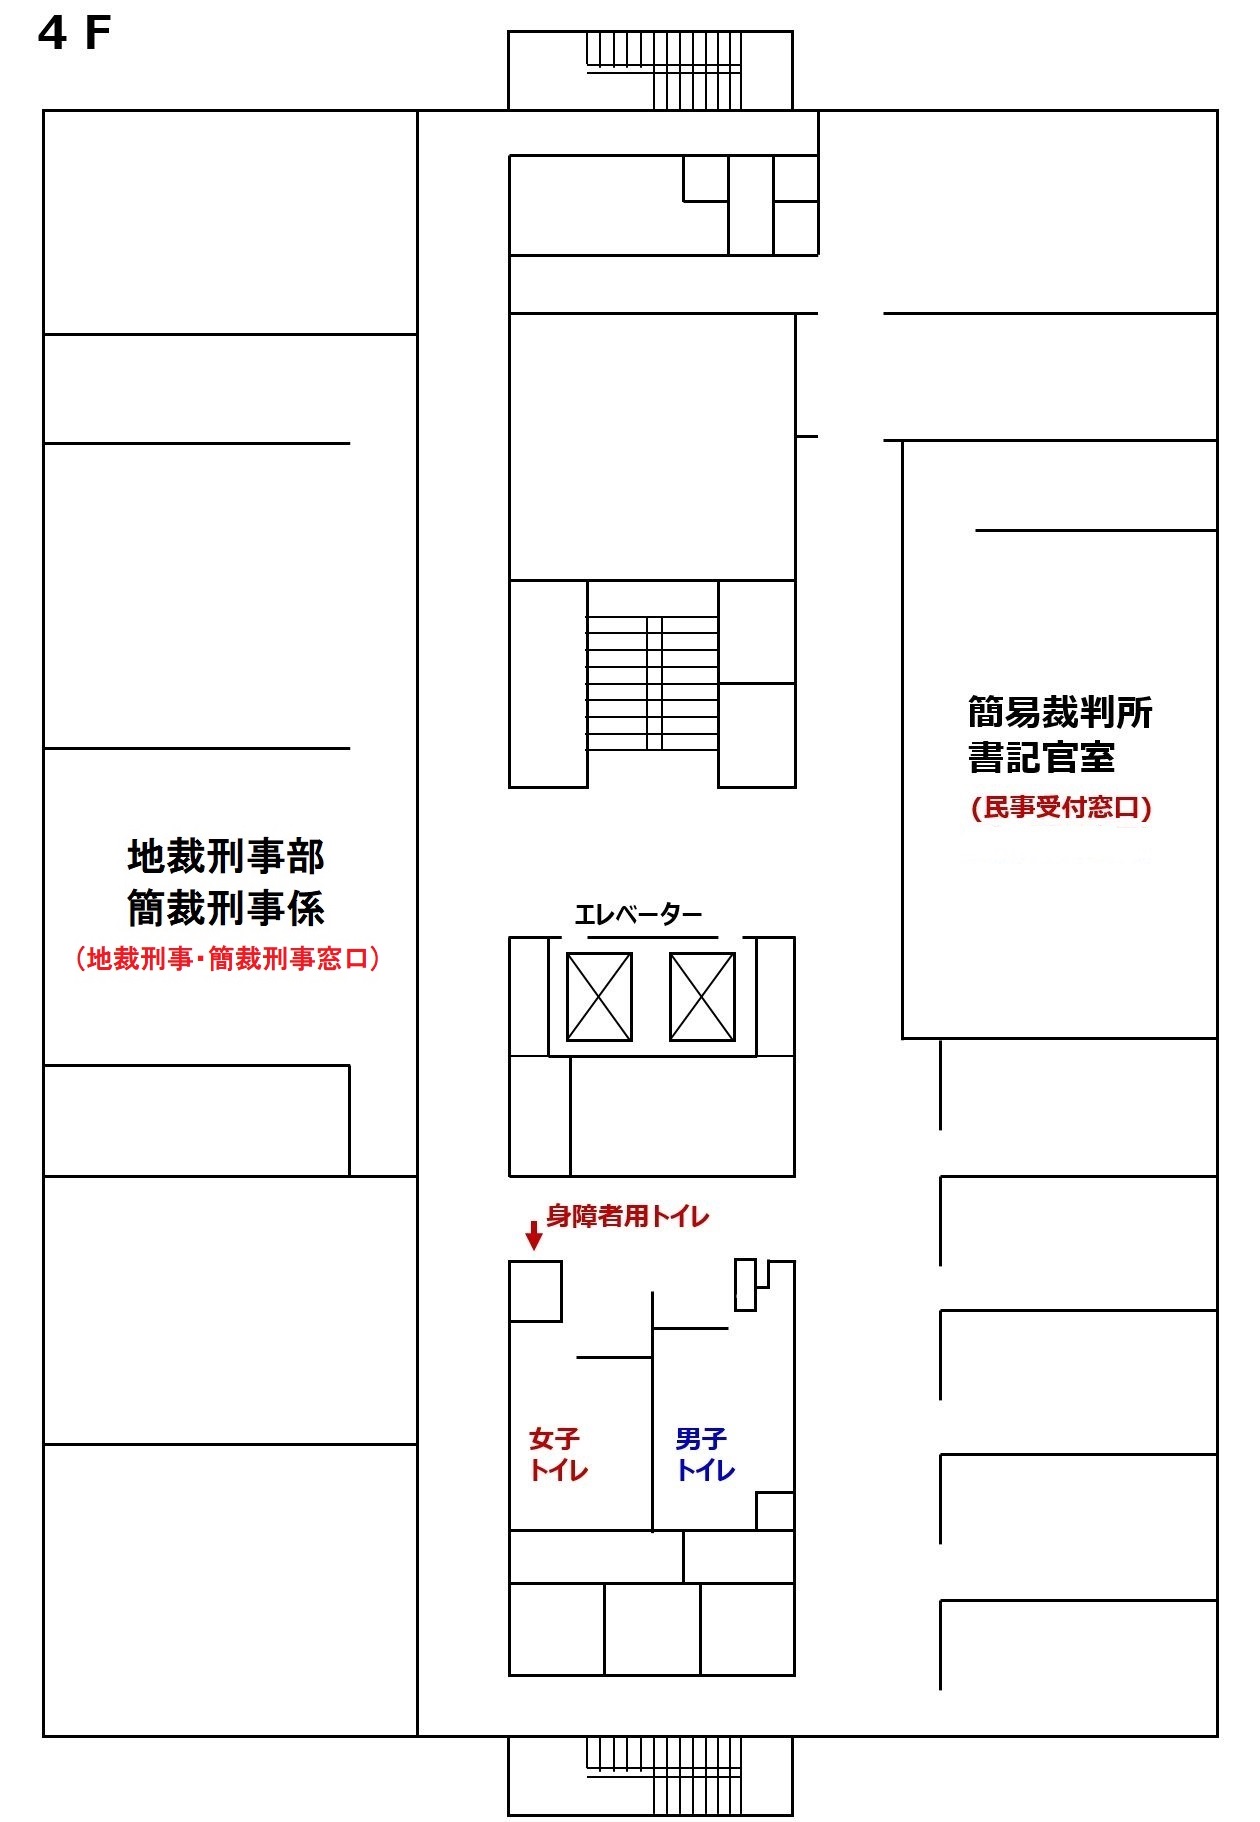 図版：函館地方裁判所 函館簡易裁判所 4階の窓口案内